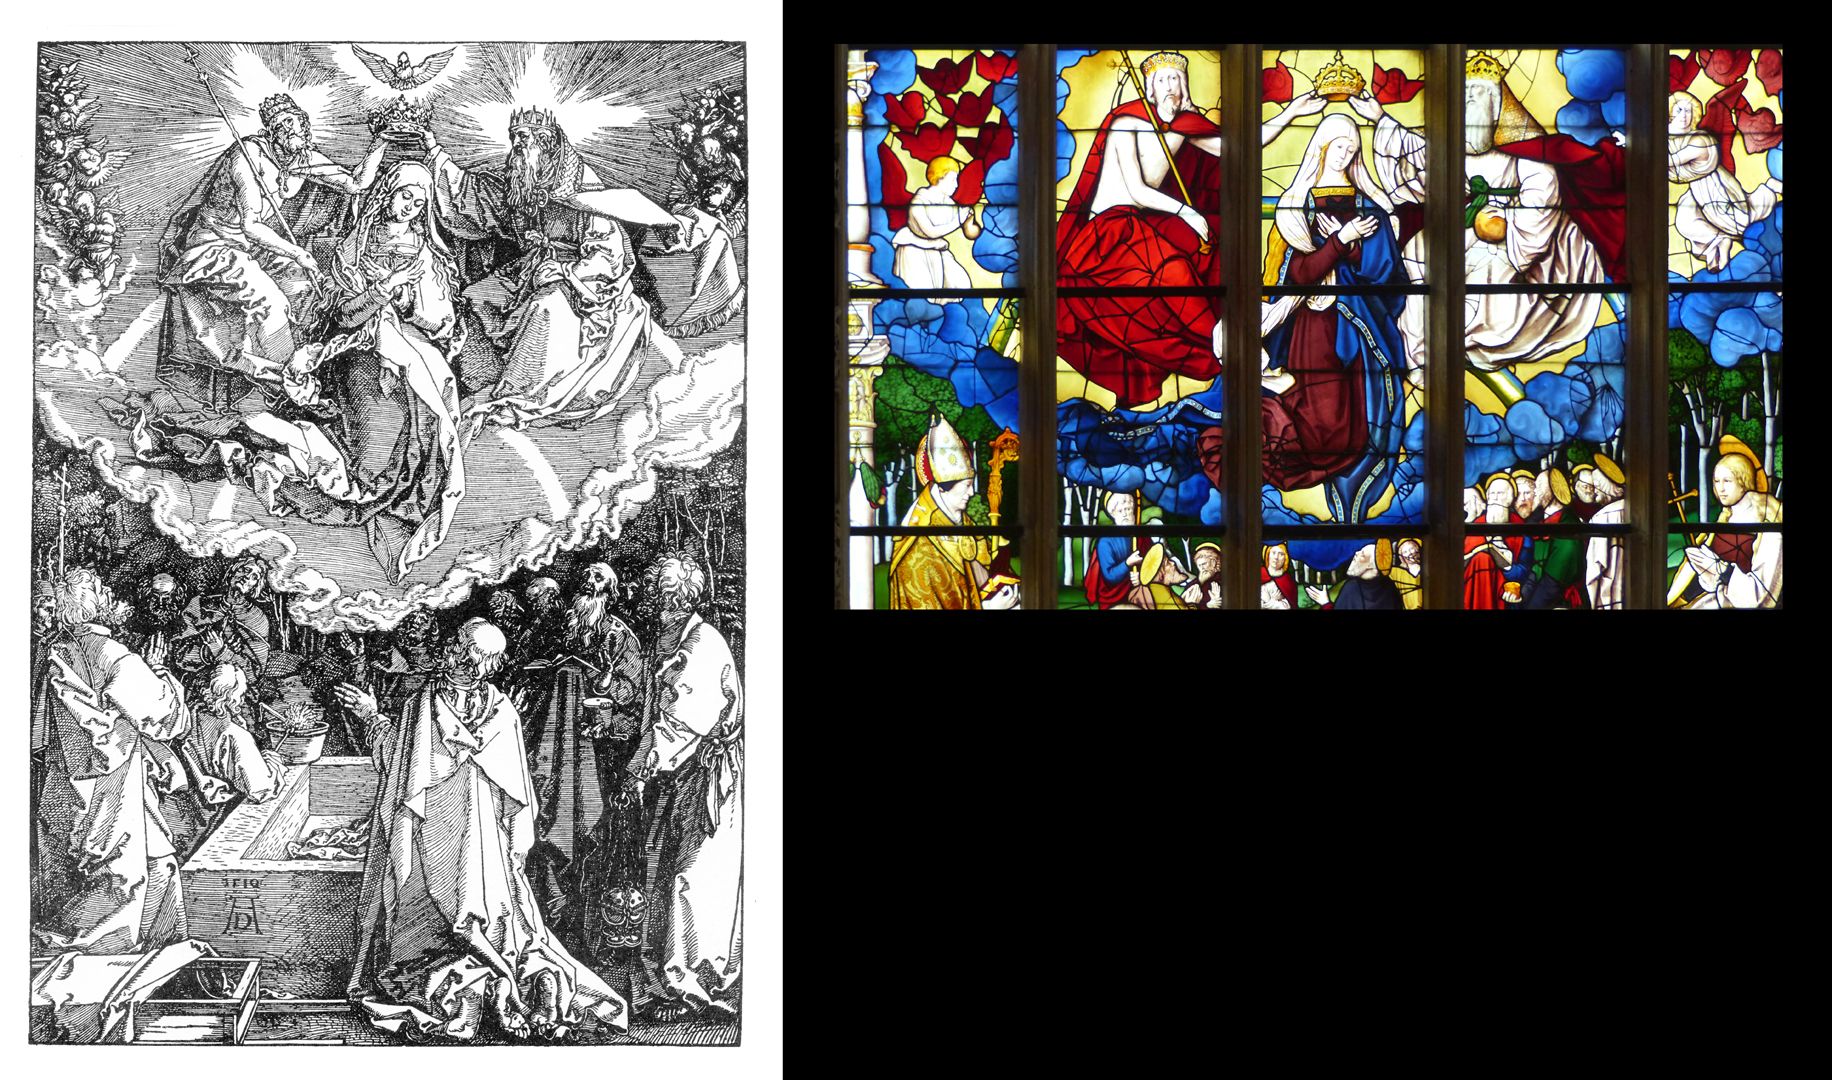 Himmelfahrt und Krönung Mariä Gegenüberstellung Dürer und Fenster in Brou